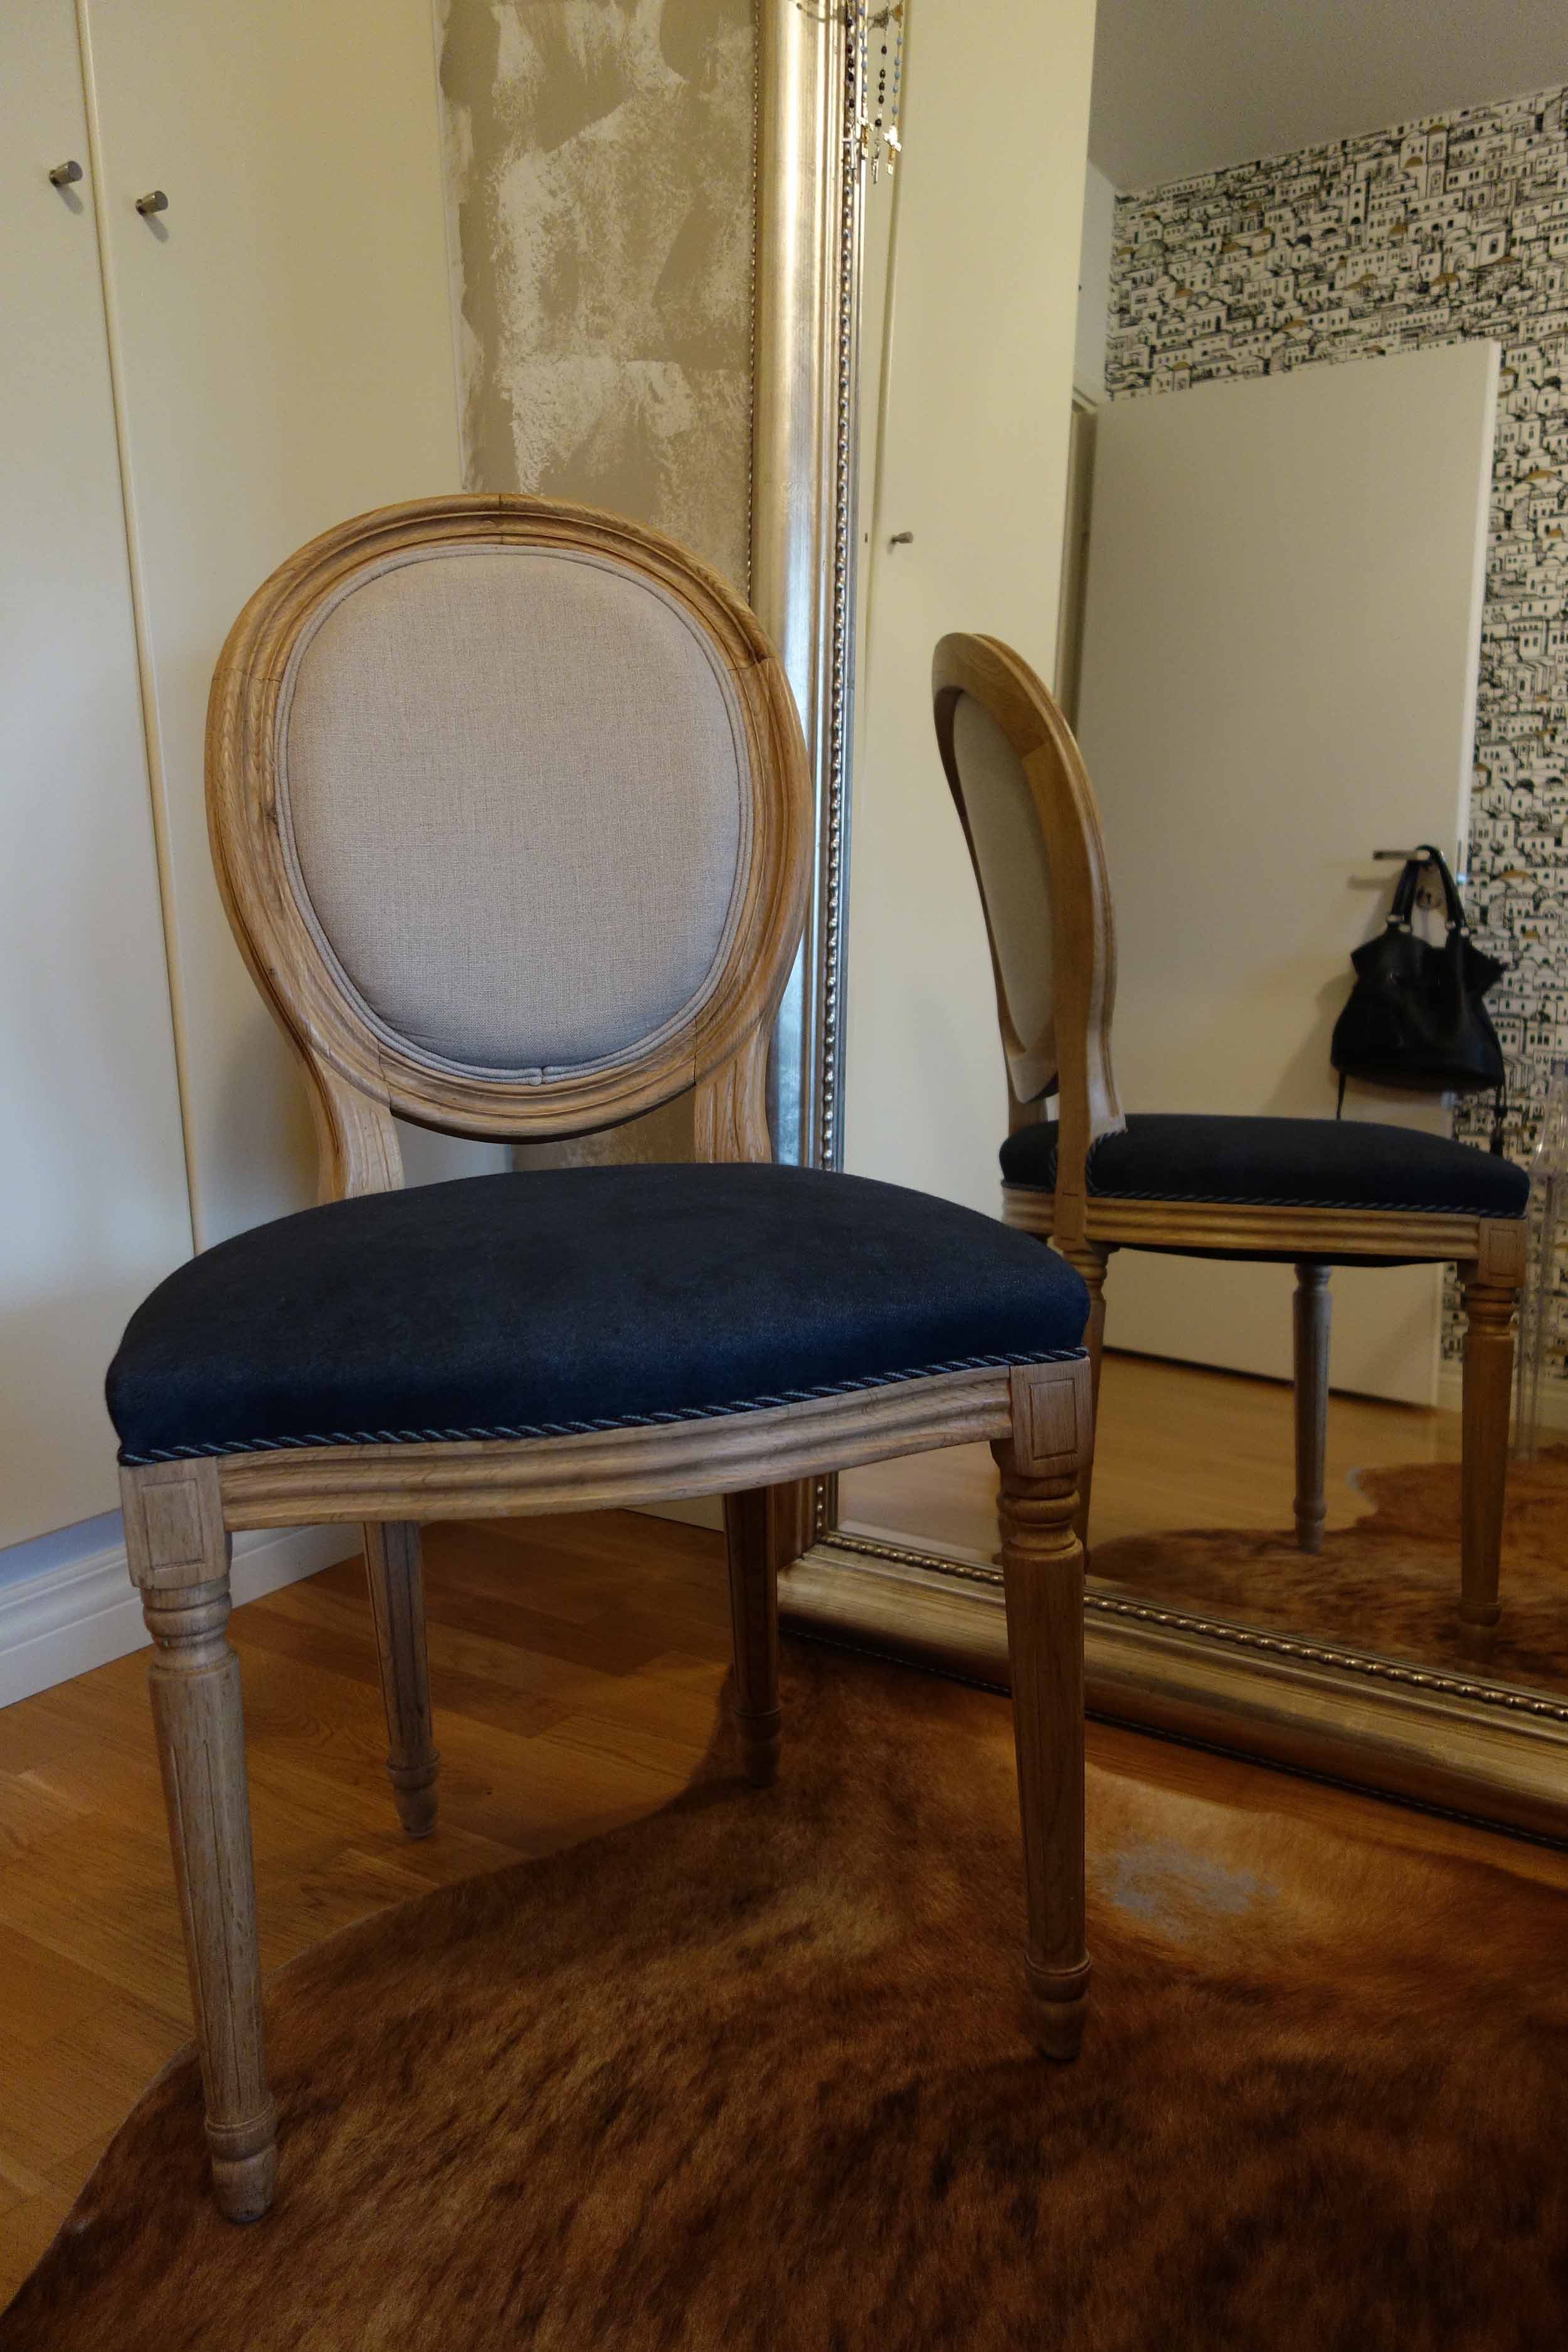 Myydään joutilaat tuolit hyvään kotiin/ Two chairs for sale – good to be  home